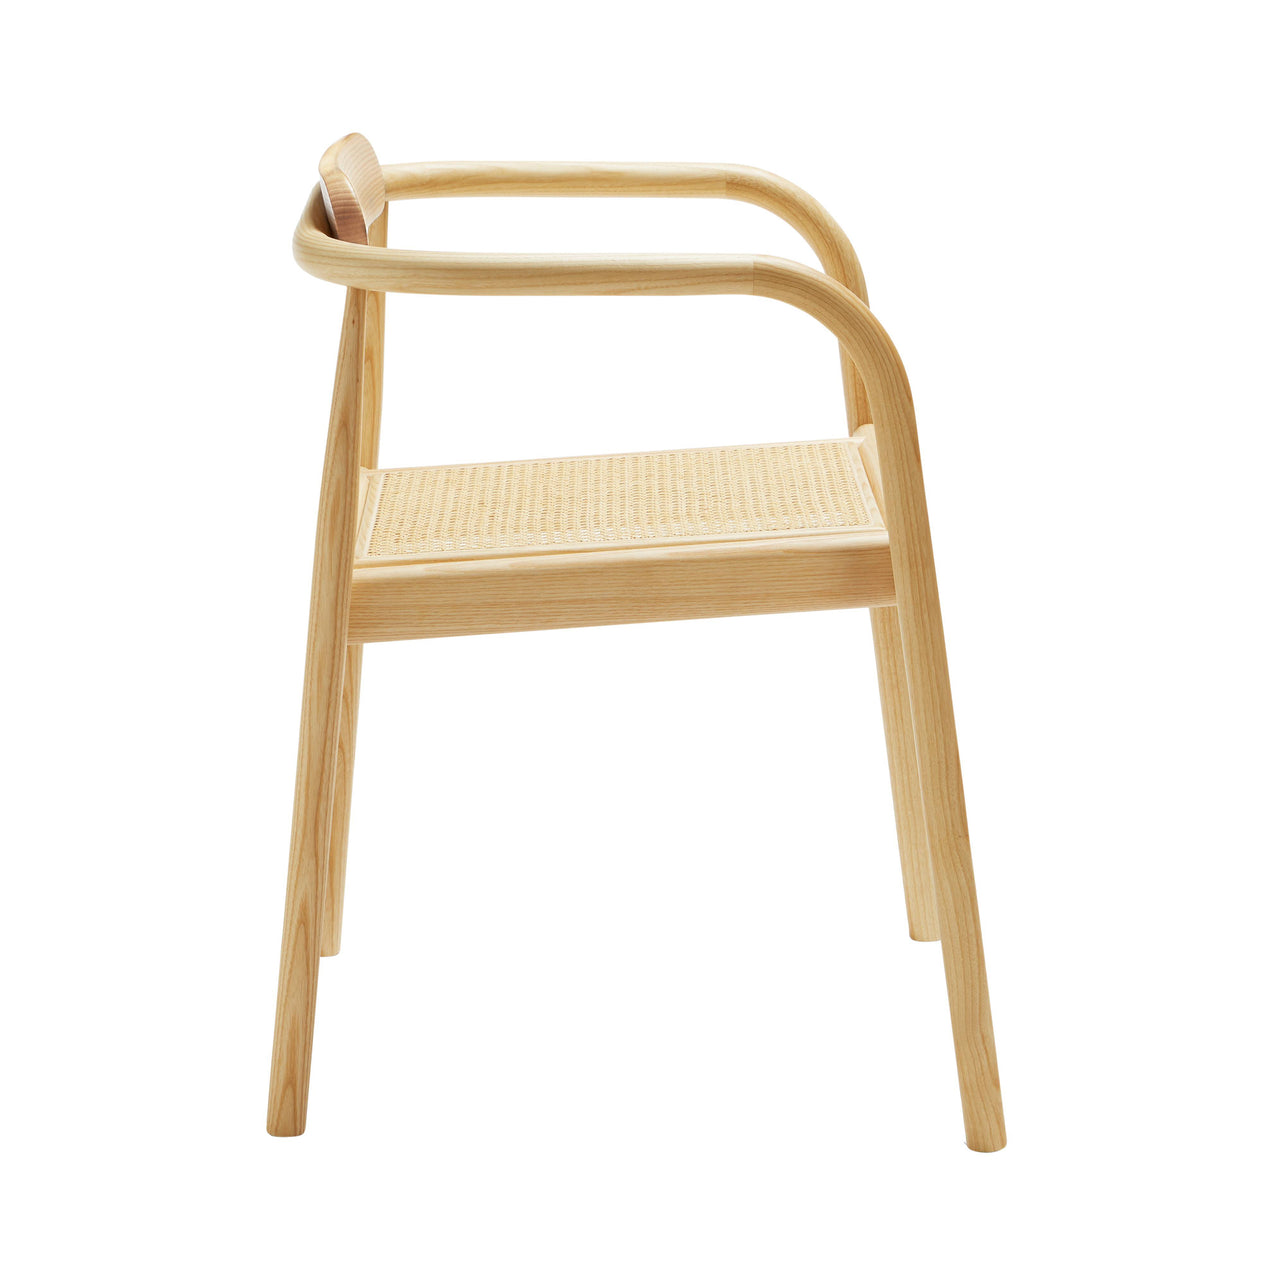 Ahm Chair: Natural Ash